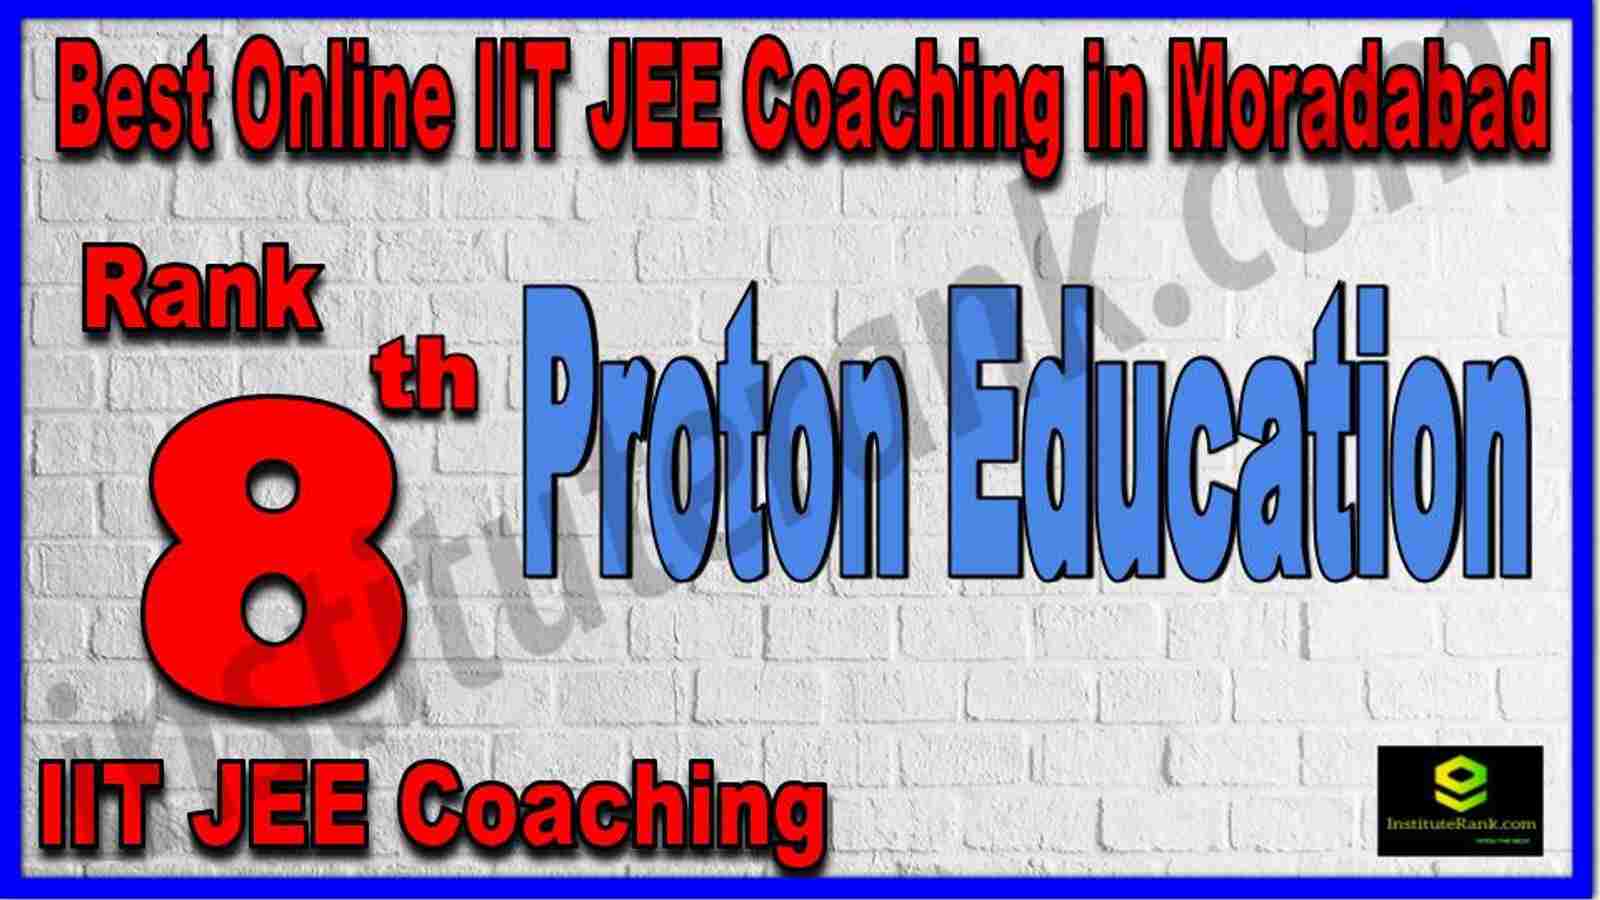 Rank 8th Best Online IIT JEE Coaching in Moradabad